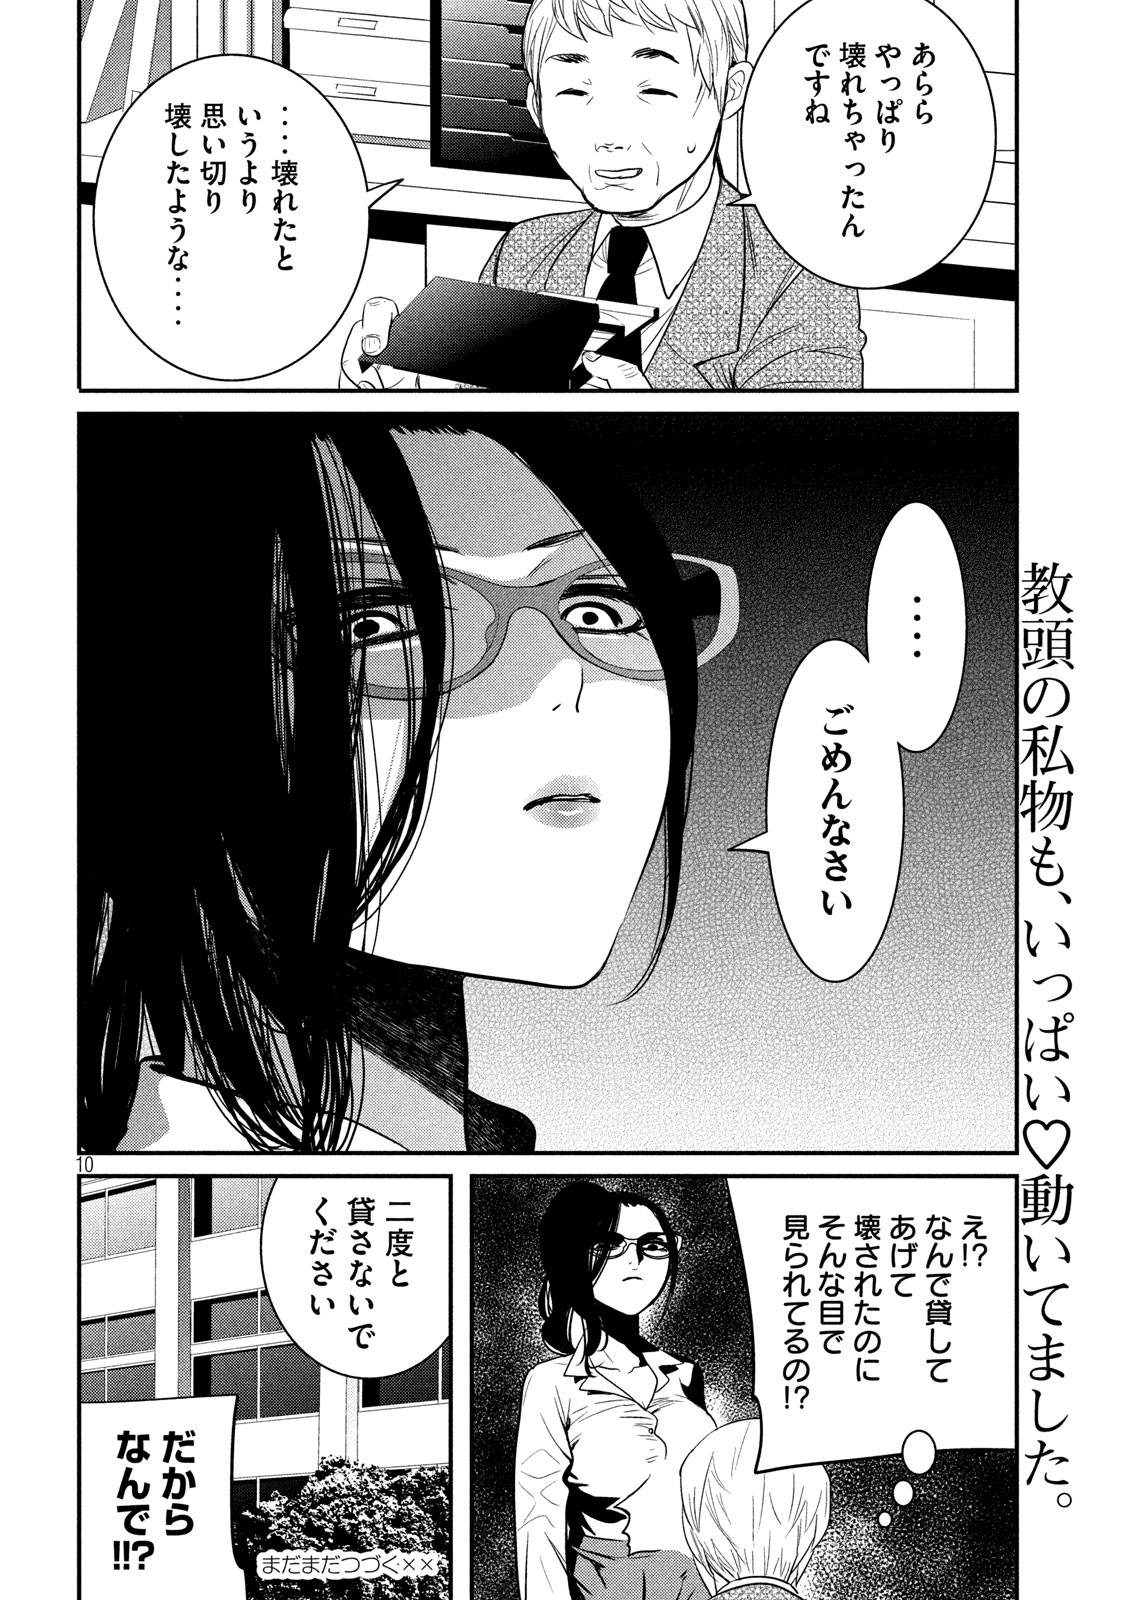 Eigo ×× Sensei - Chapter 5 - Page 10